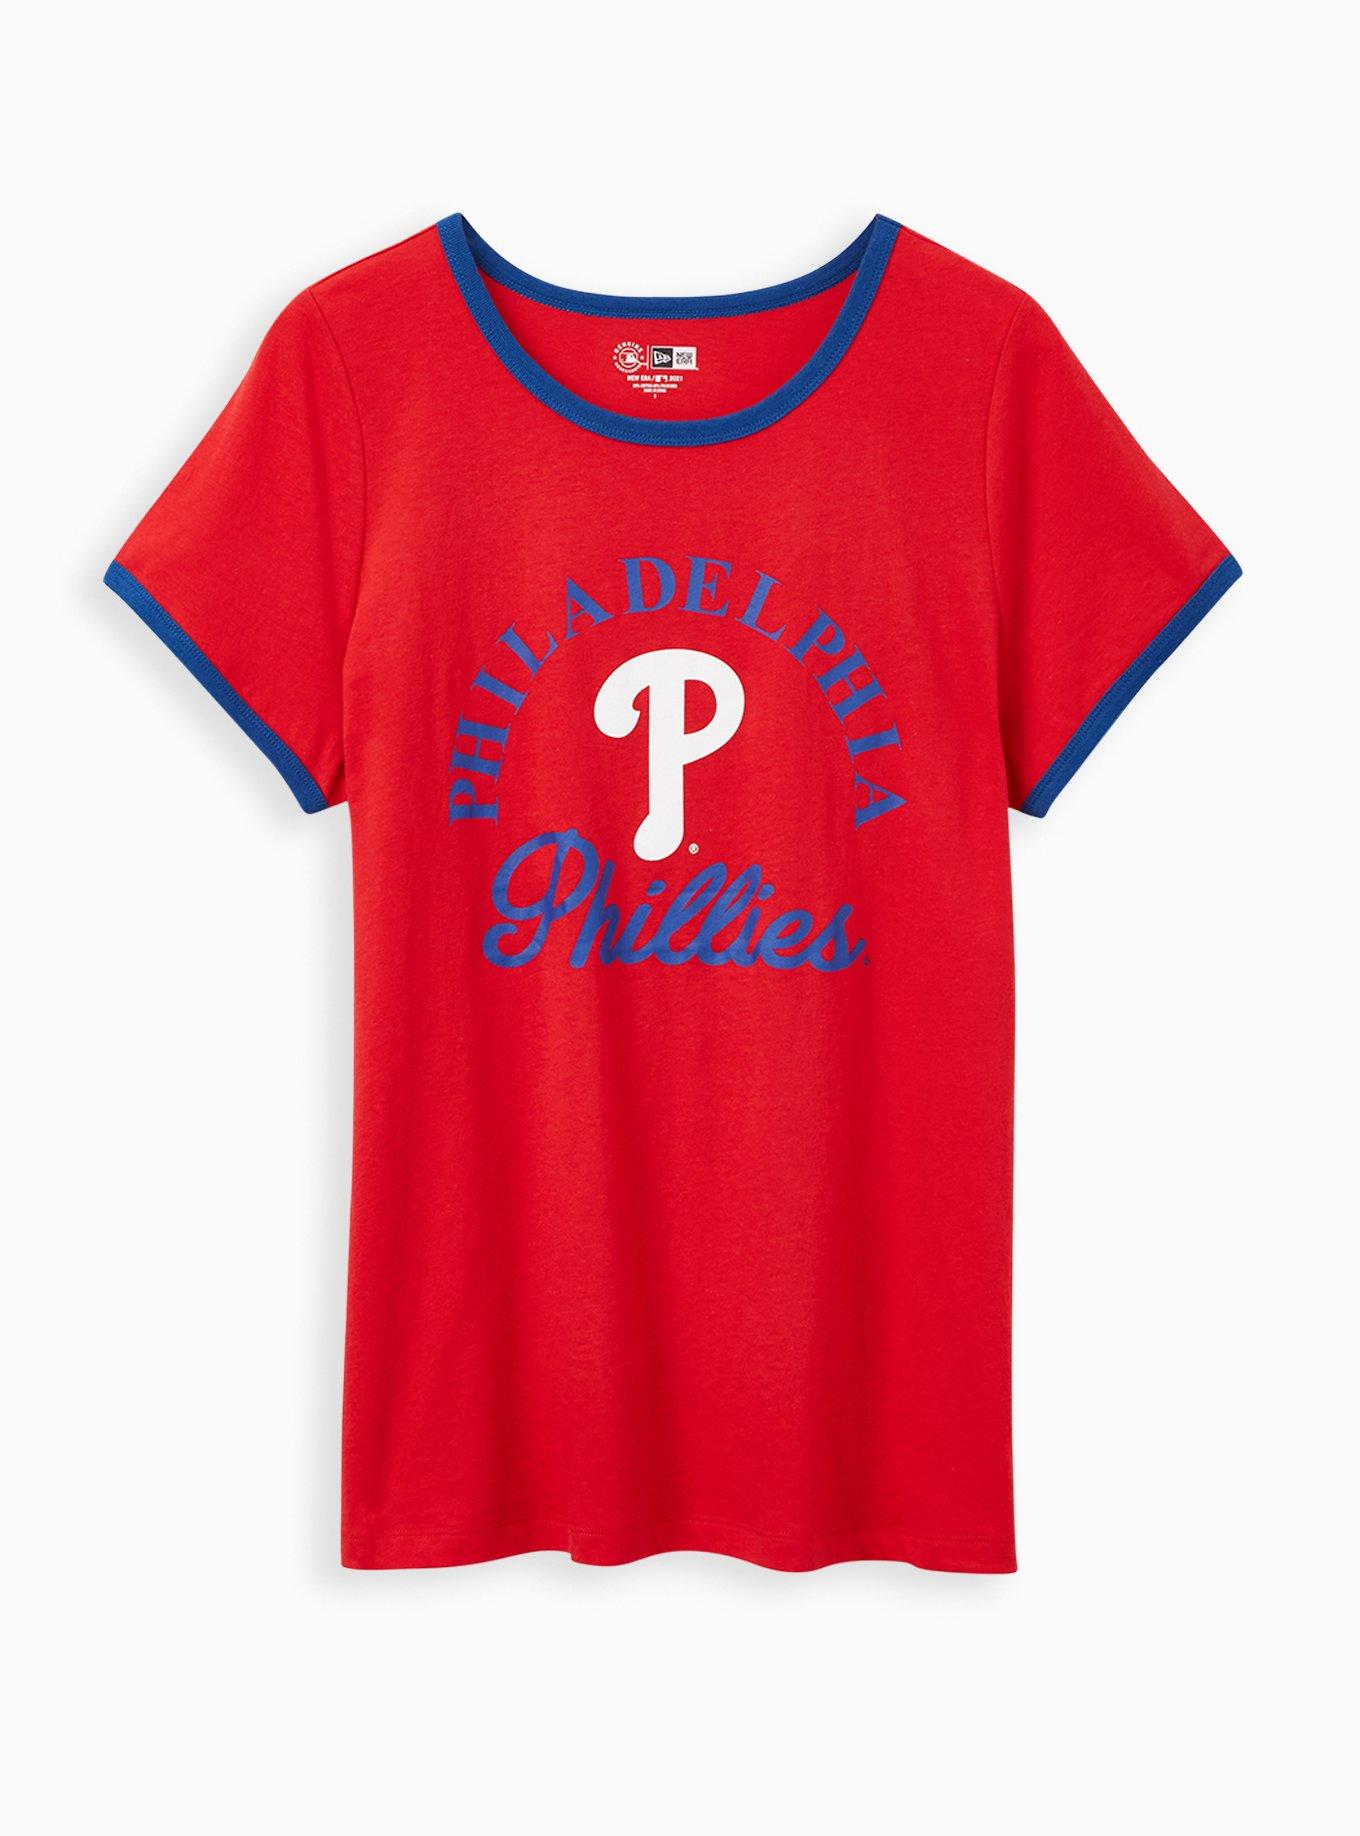 Philadelphia Phillies Comfort Color Shirt, Phillies Eras Tour